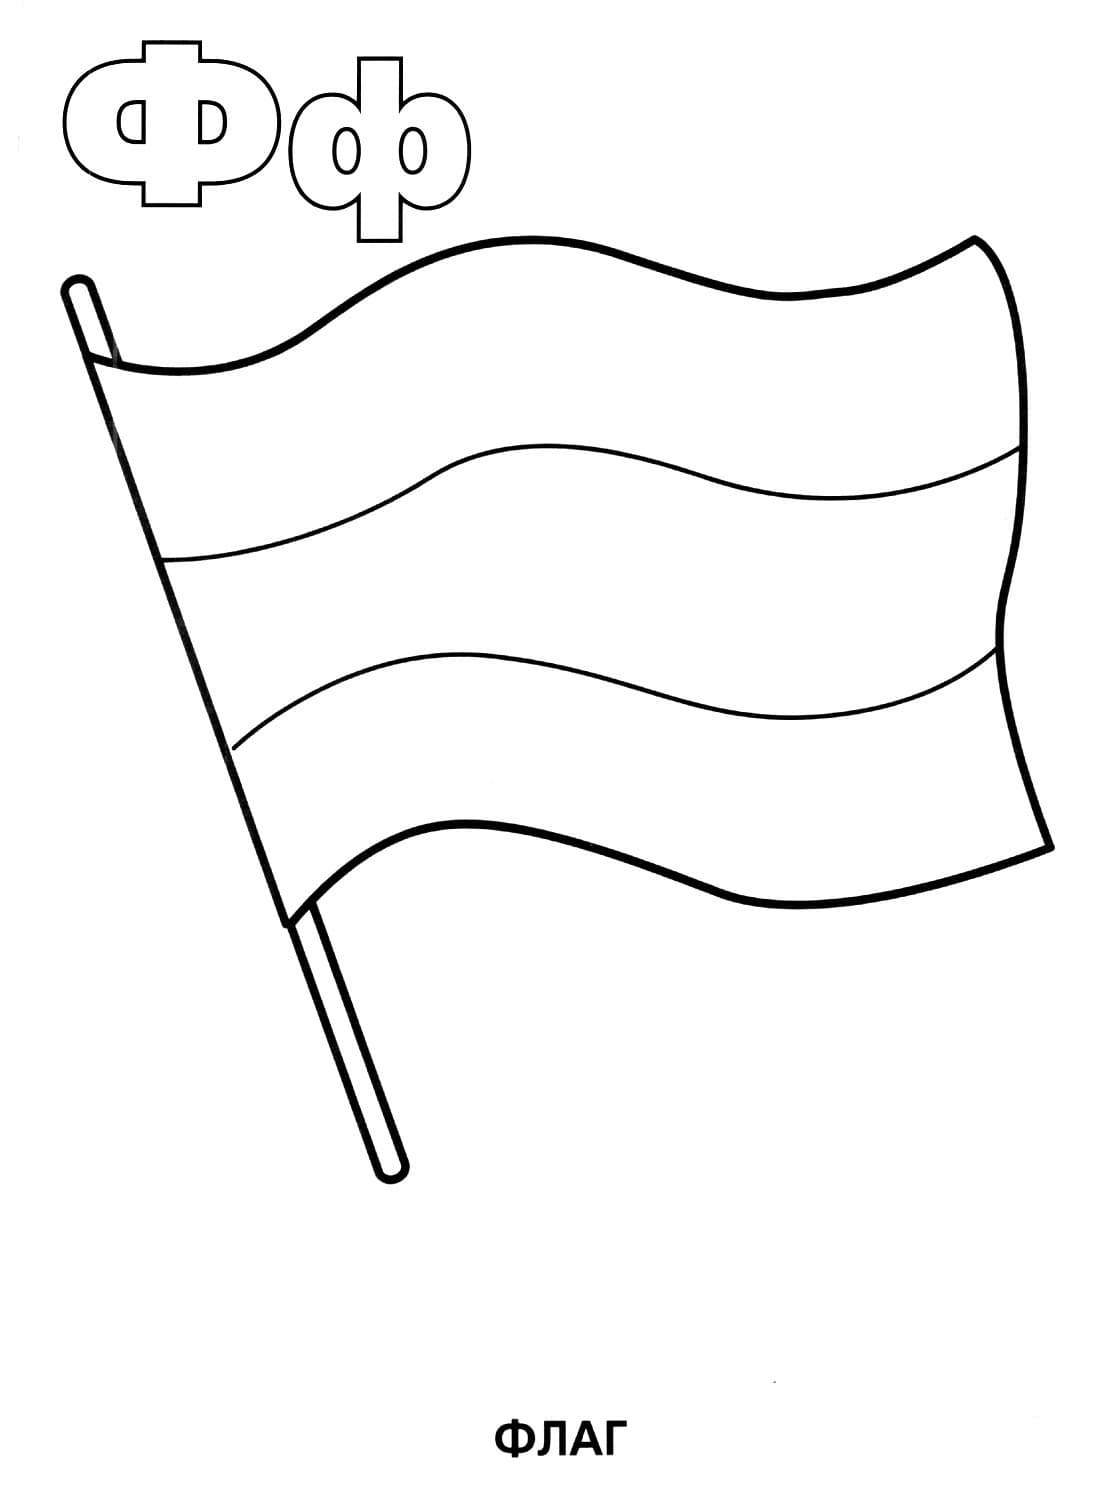 Флаг раскраска буквы Ф